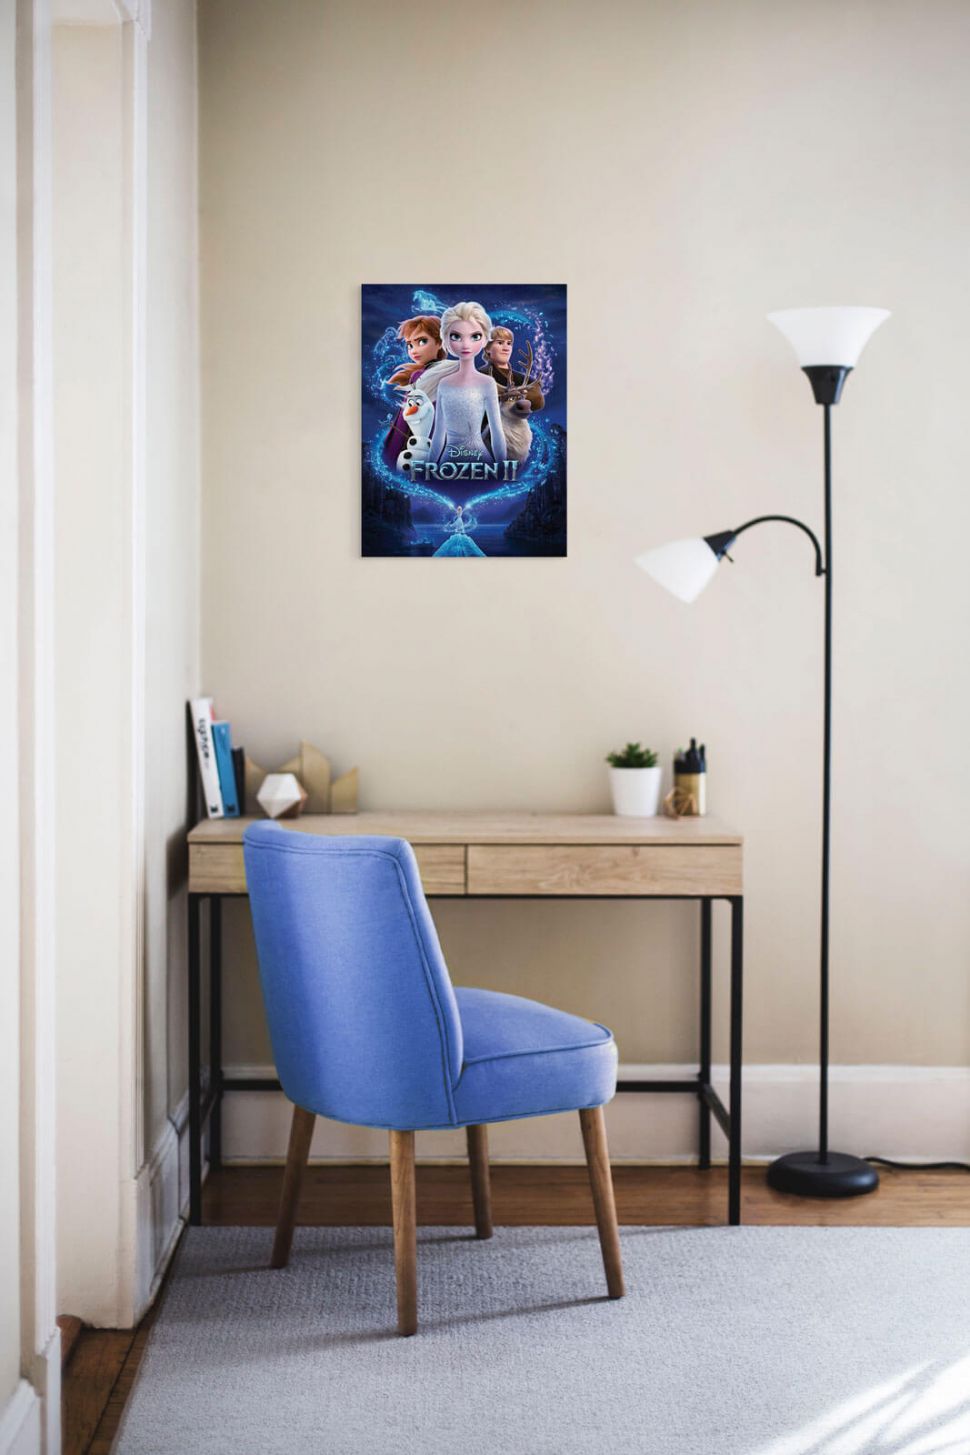 Obraz z bajki Frozen 2 Magic powieszony nad biurkiem drewnianym